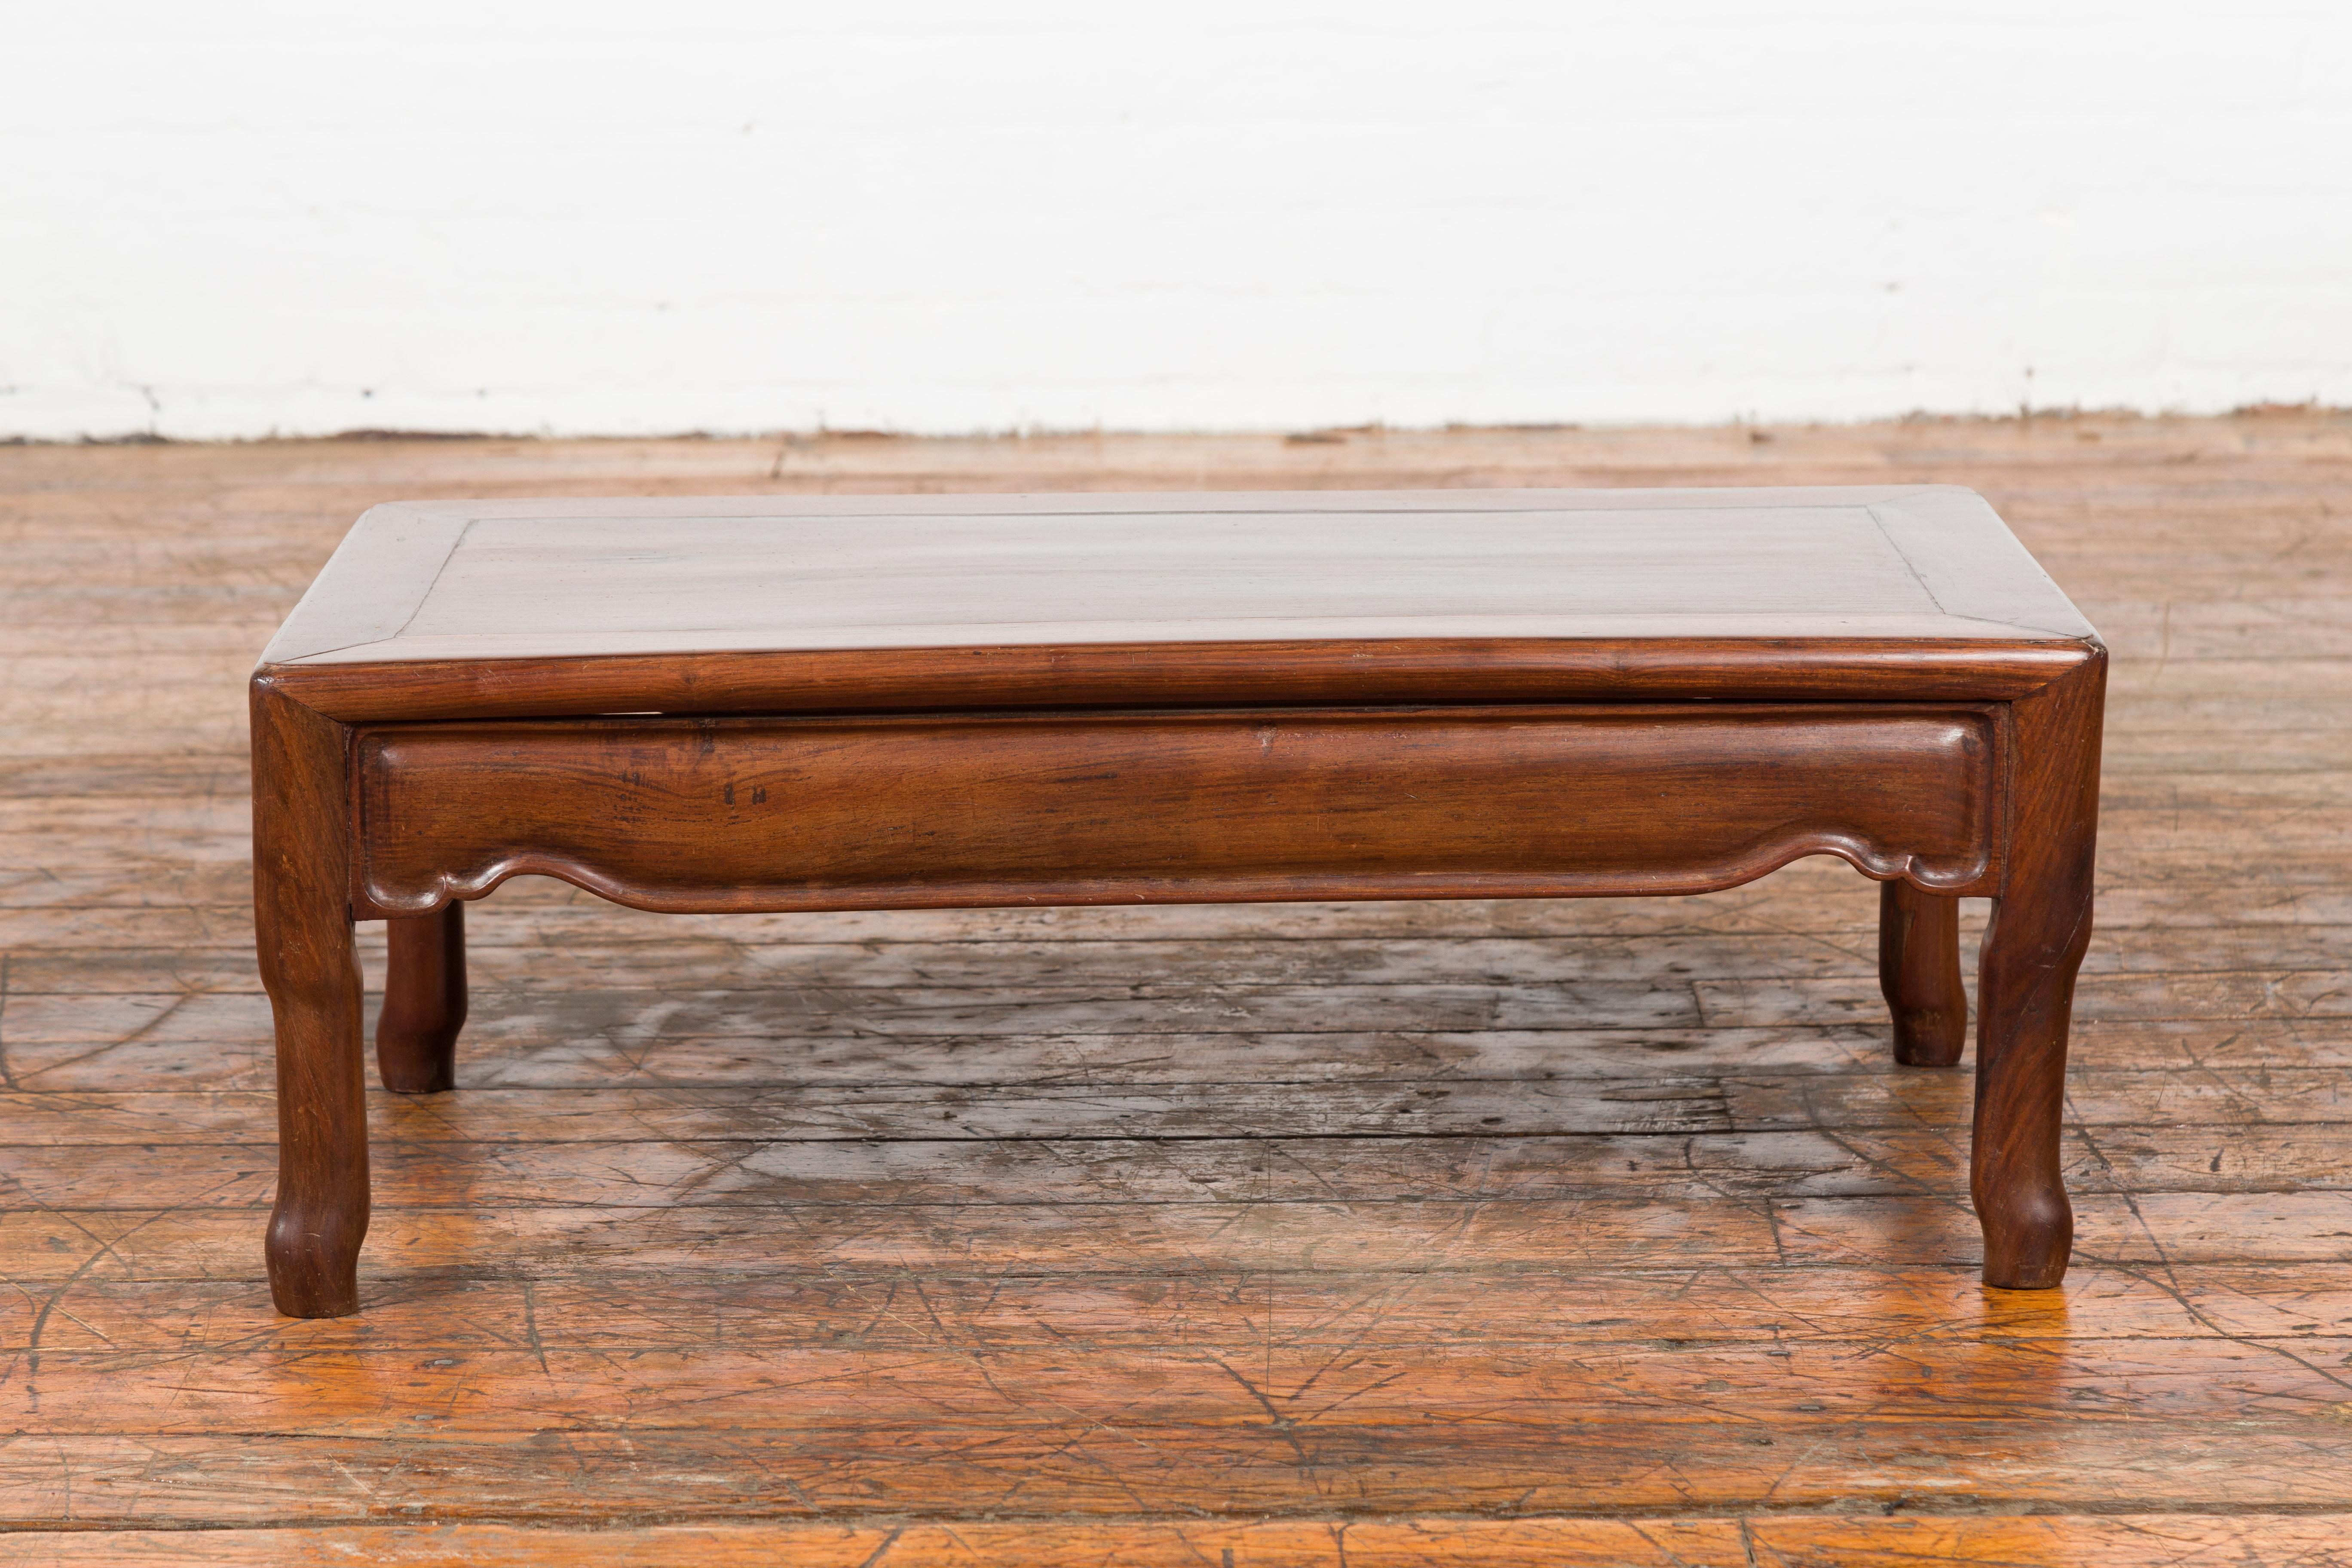 Une table de prière basse chinoise vintage de style Art of Vintage du 20ème siècle, avec un tablier sculpté. Créée en Chine, cette table de prière de style Art déco présente un plateau rectangulaire avec une planche centrale, surmontant un tablier